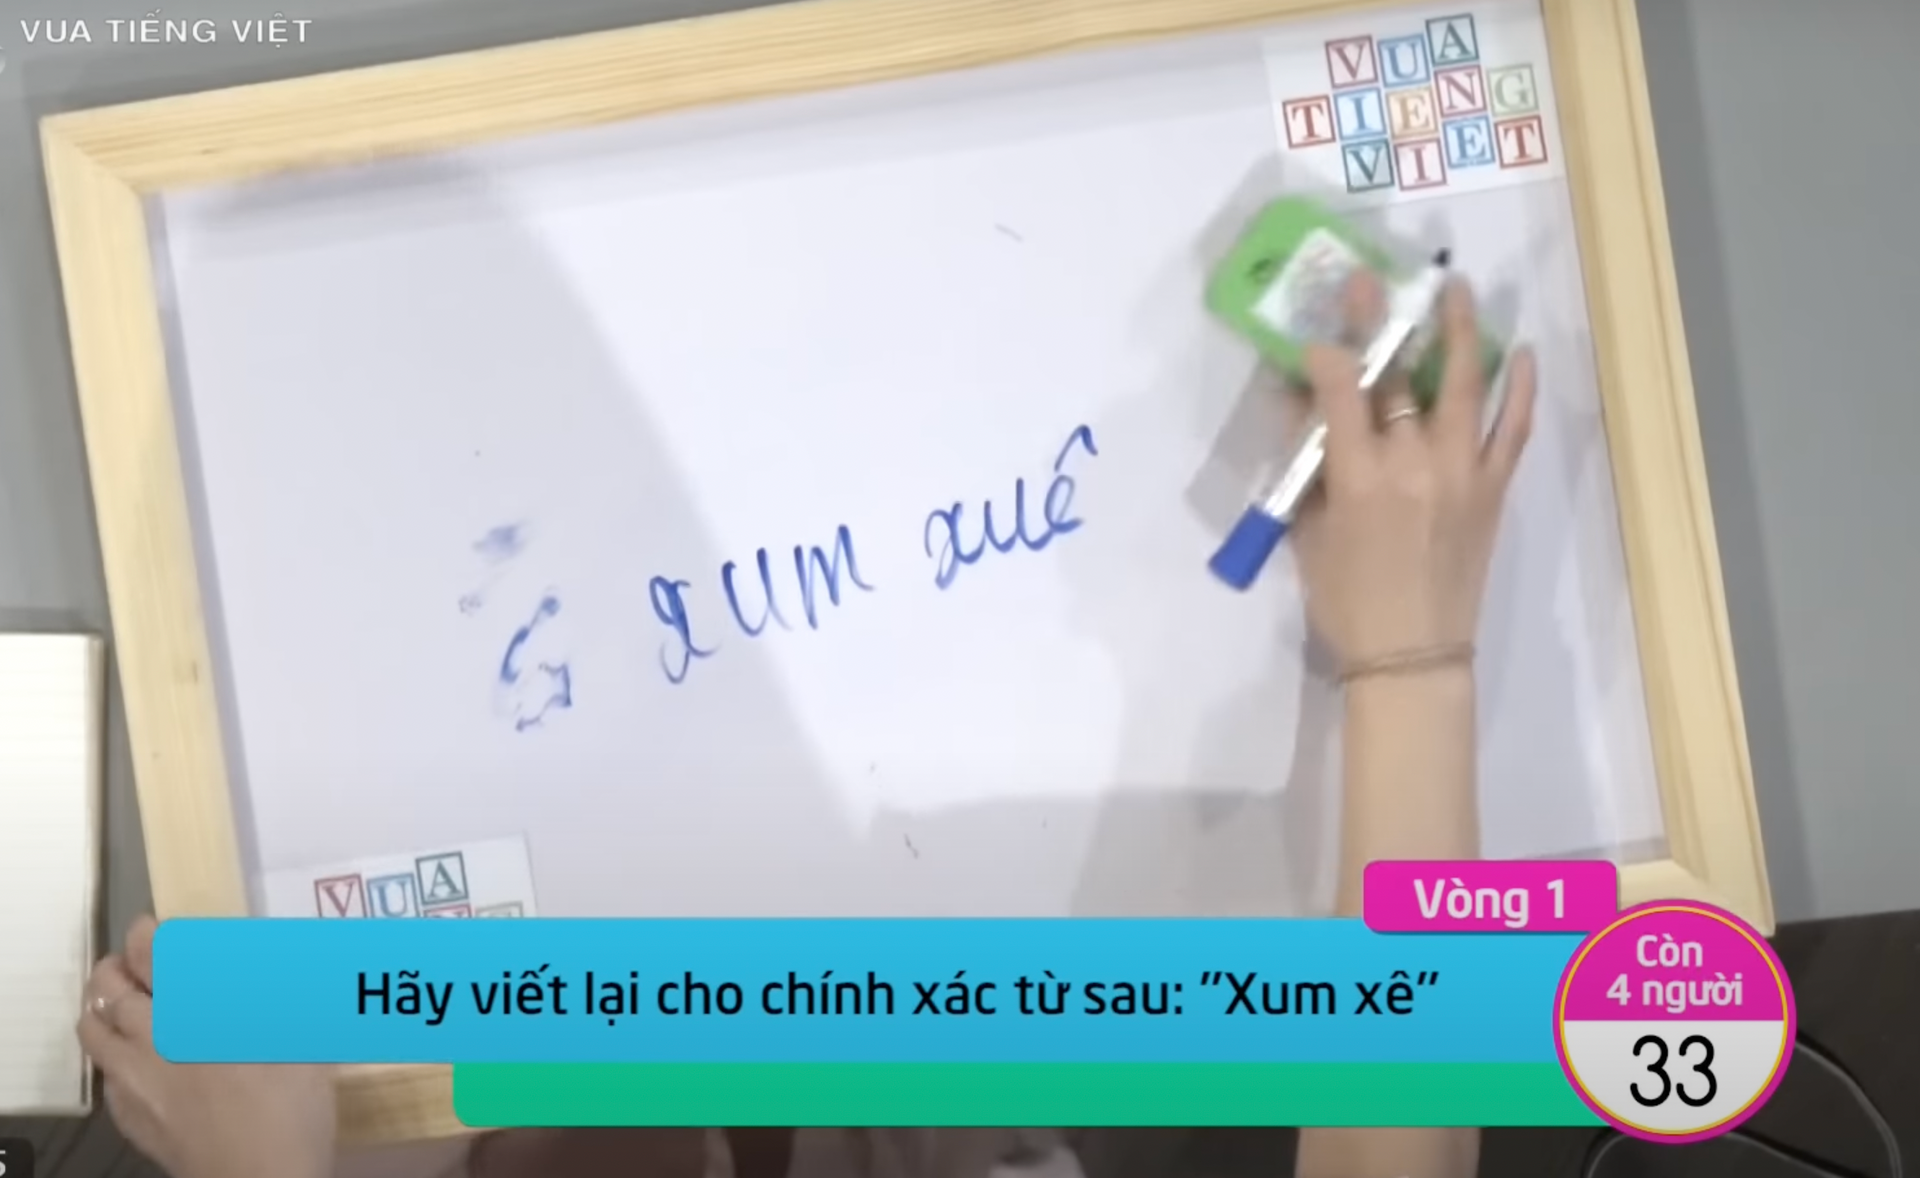 Vua tiếng Việt liên tiếp bị tố đầy sạn, chuyên gia ngôn ngữ học lên tiếng - 1